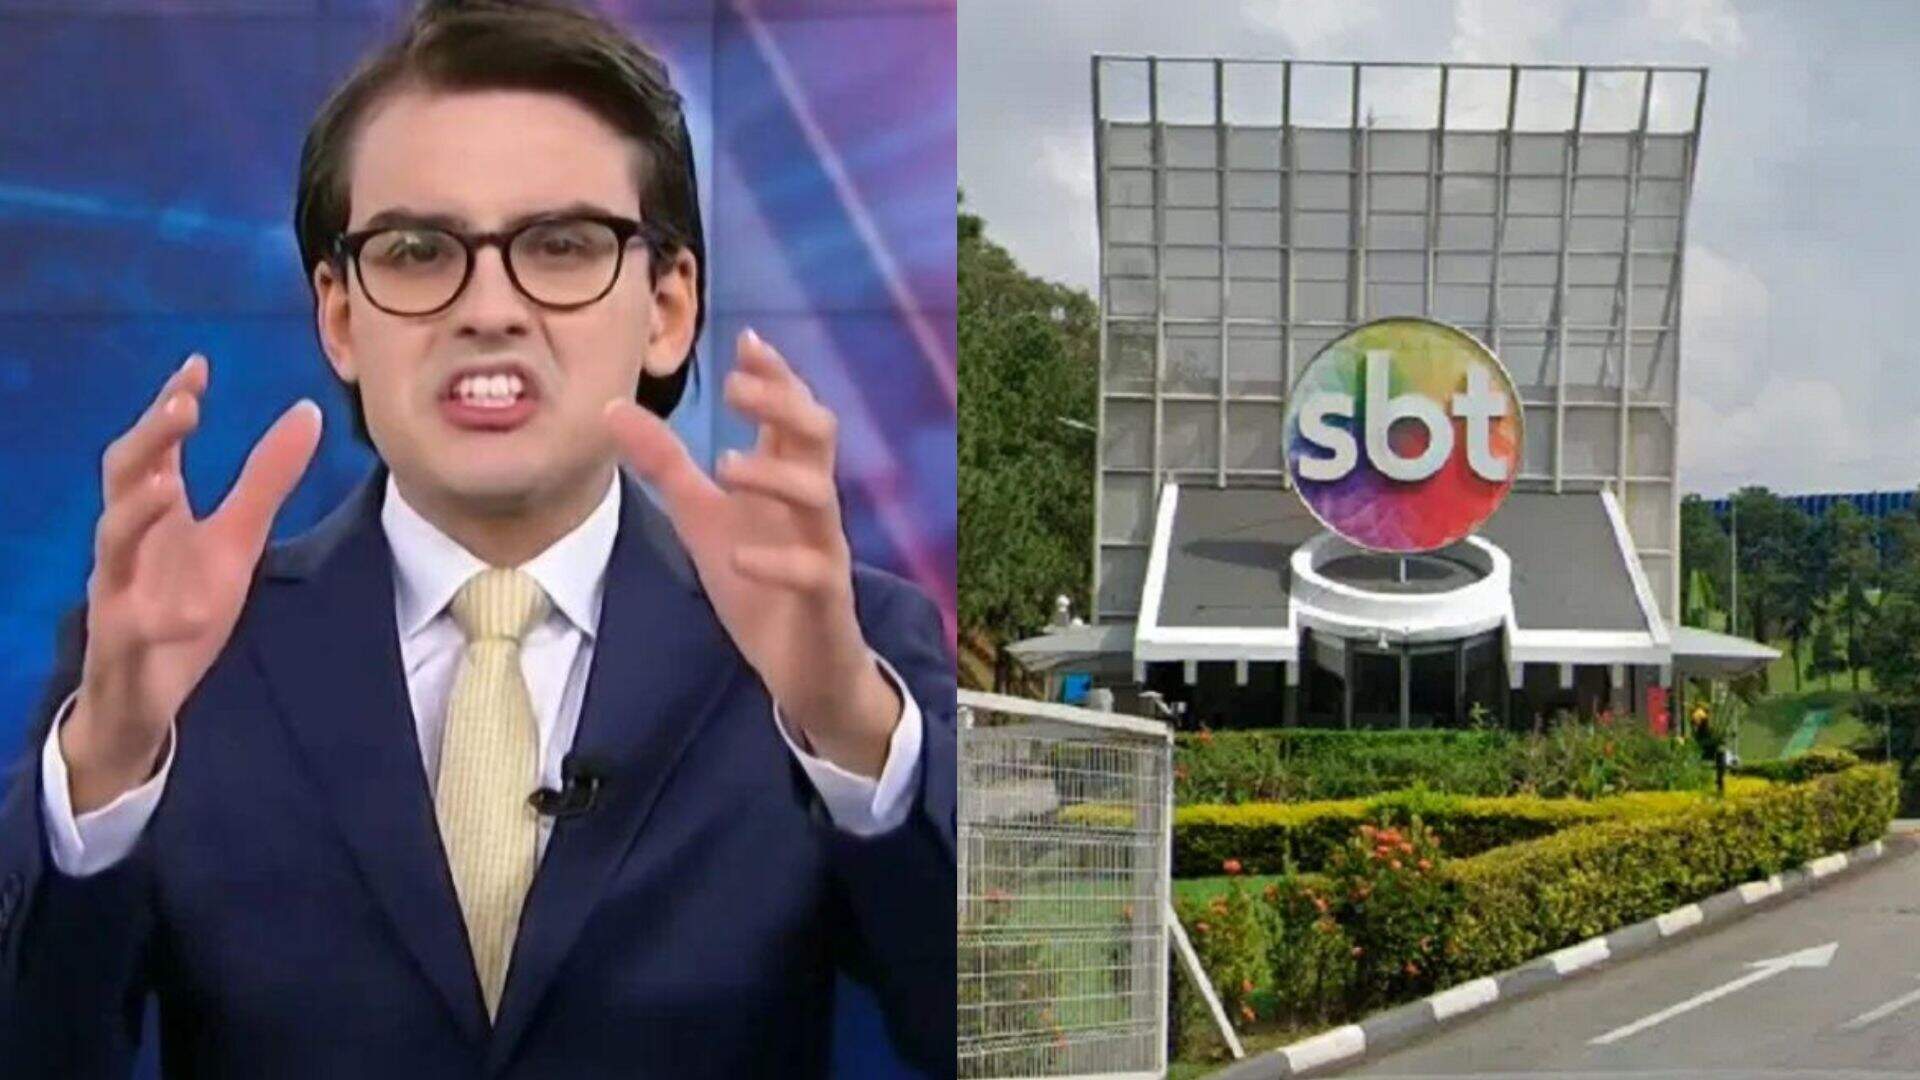 Dudu Camargo choca ao criticar mudanças no SBT e fala de vice-presidente da emissora - Metropolitana FM